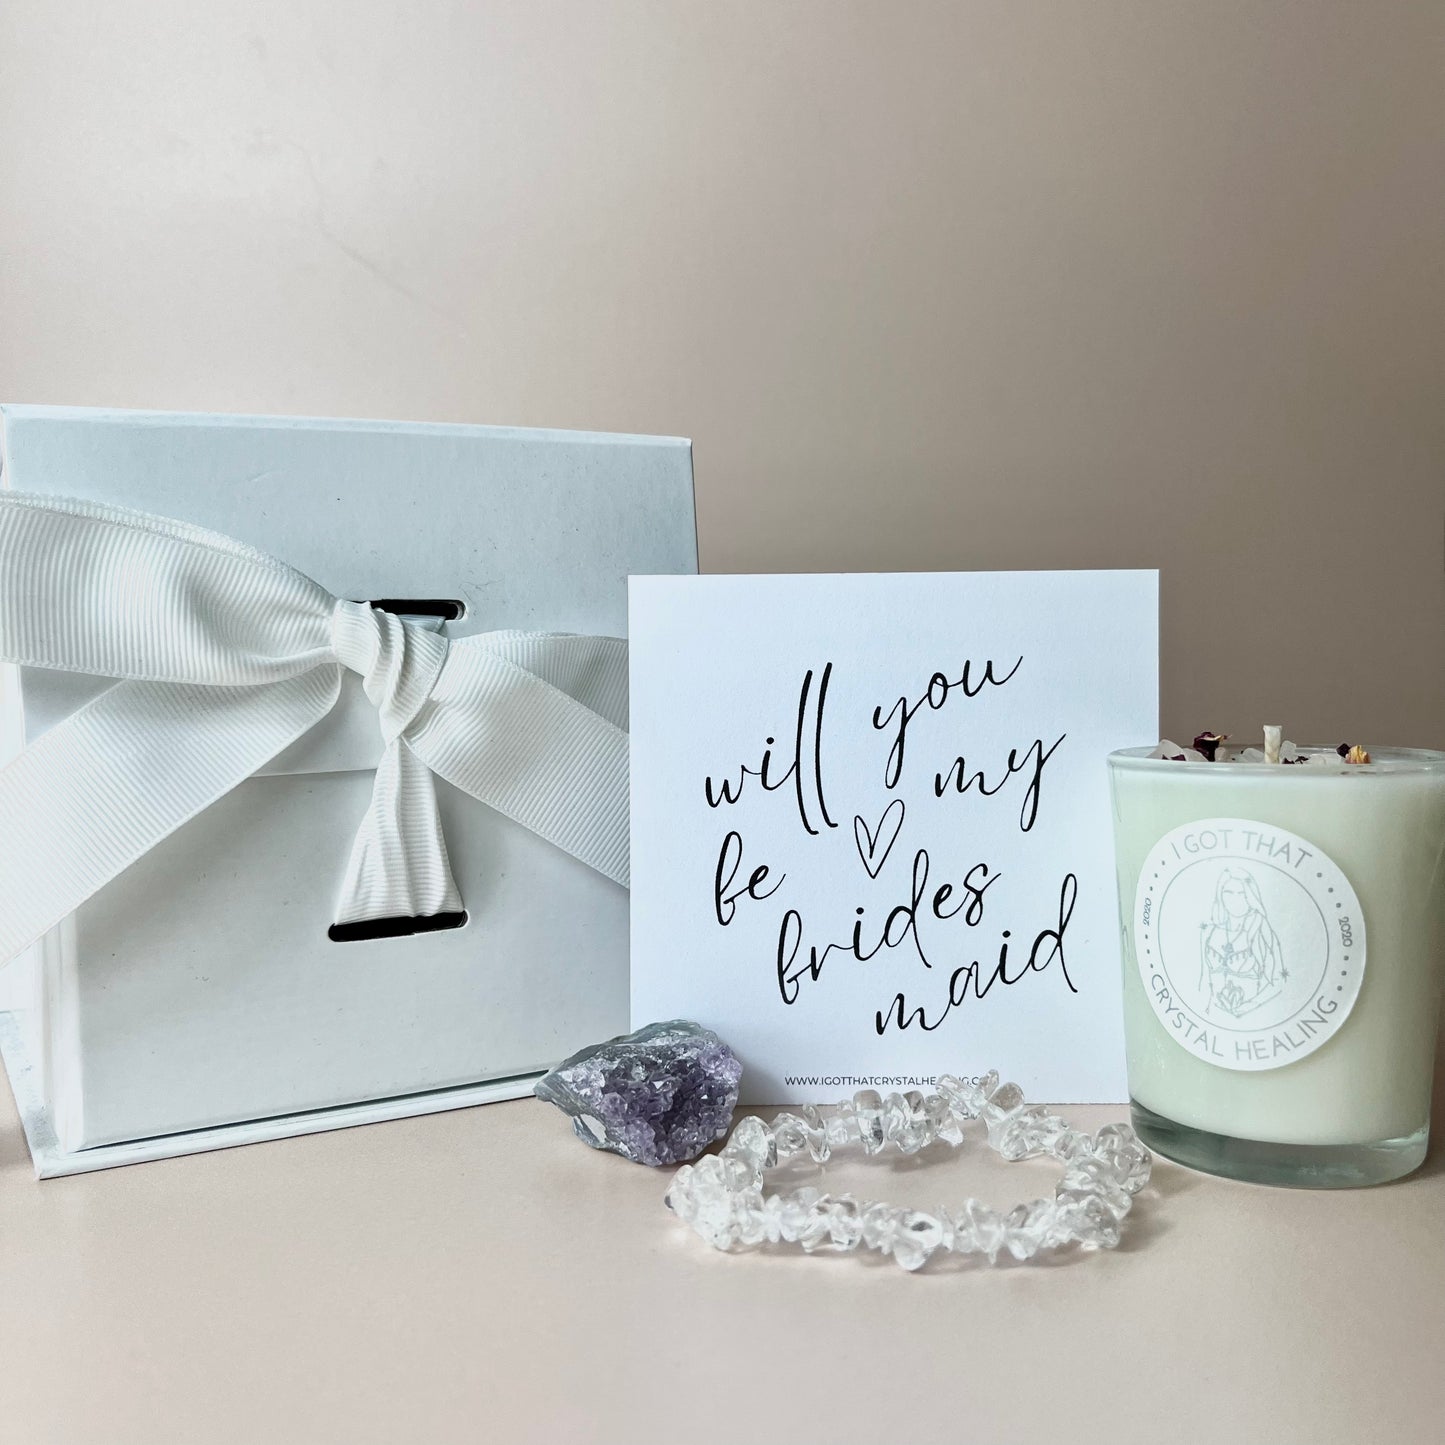 Be my bridesmaid - Gift Set